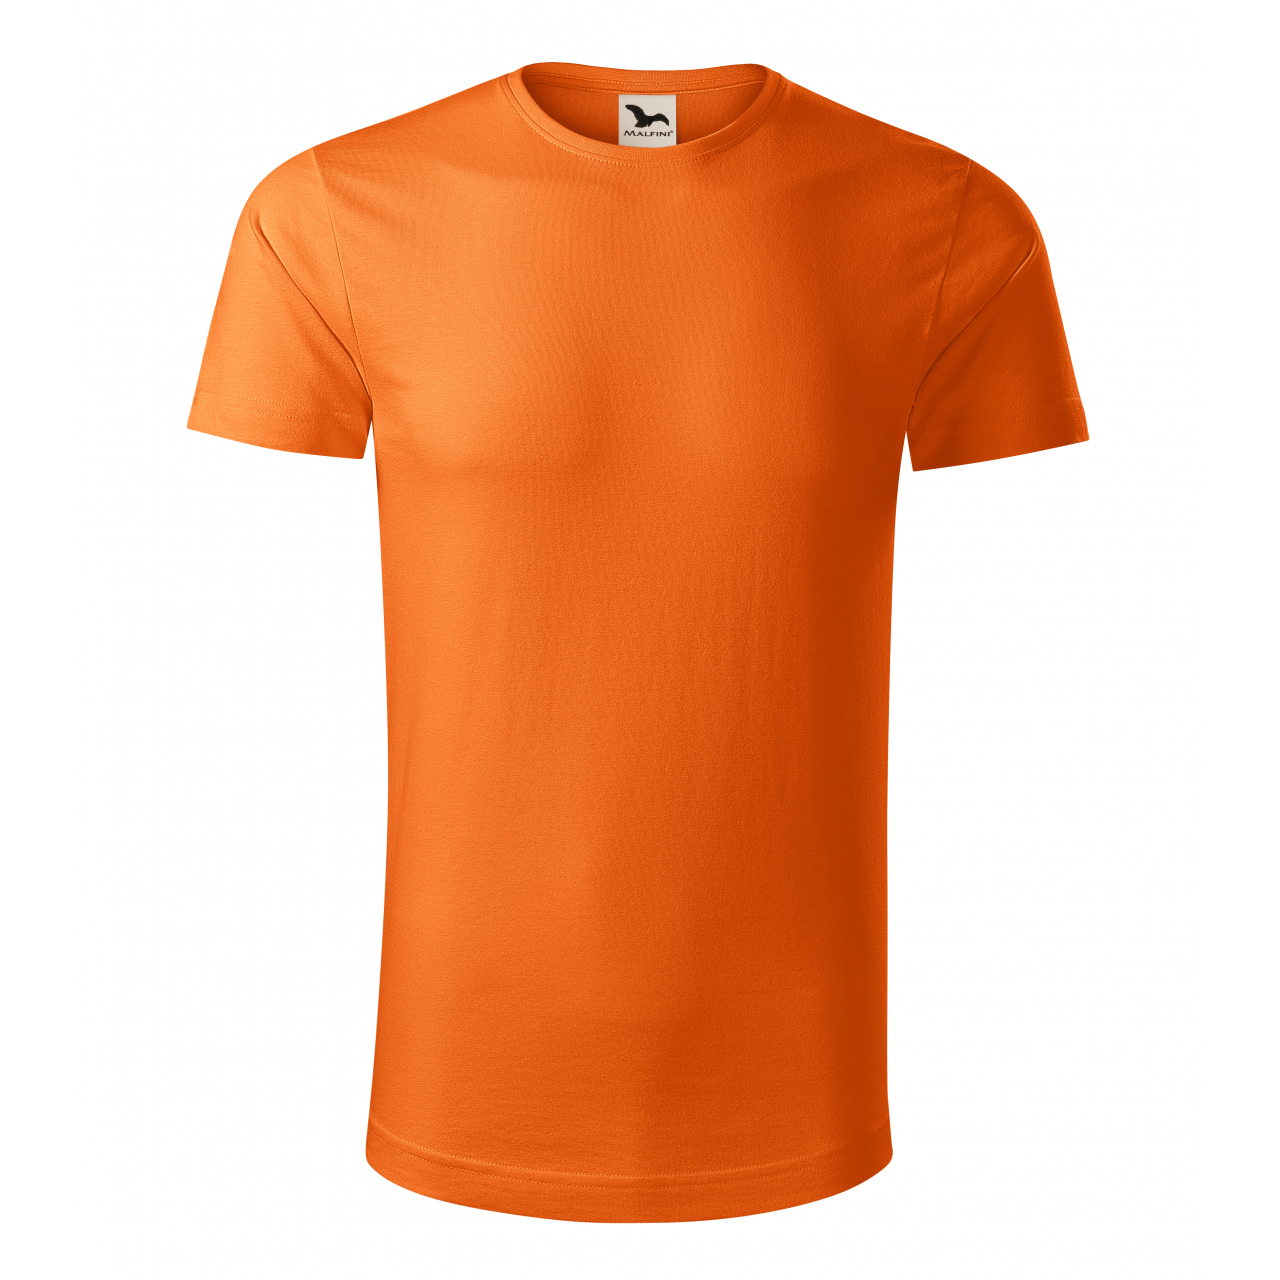 Tričko pánské Malfini Origin - oranžové, S